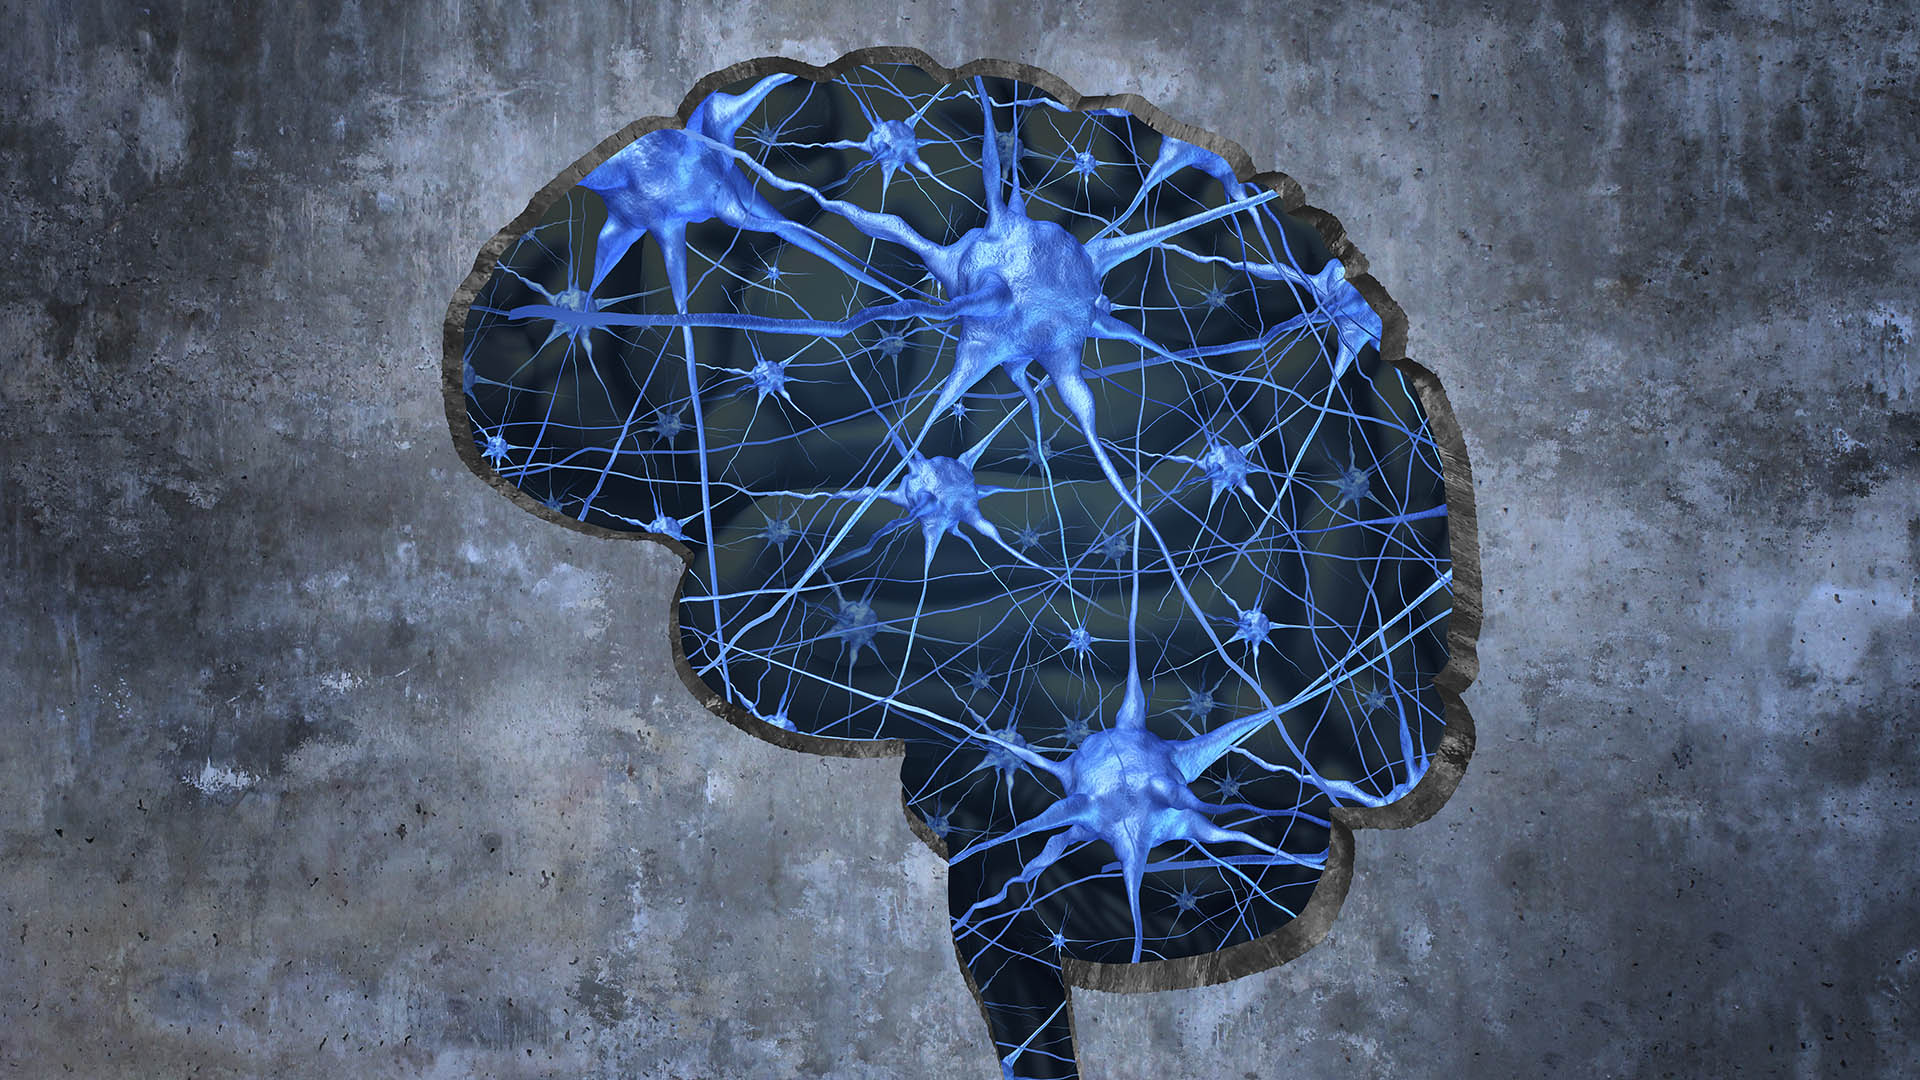 La estimulación cerebral podría revertir la pérdida de capacidad cognitiva relacionada con el Alzheimer